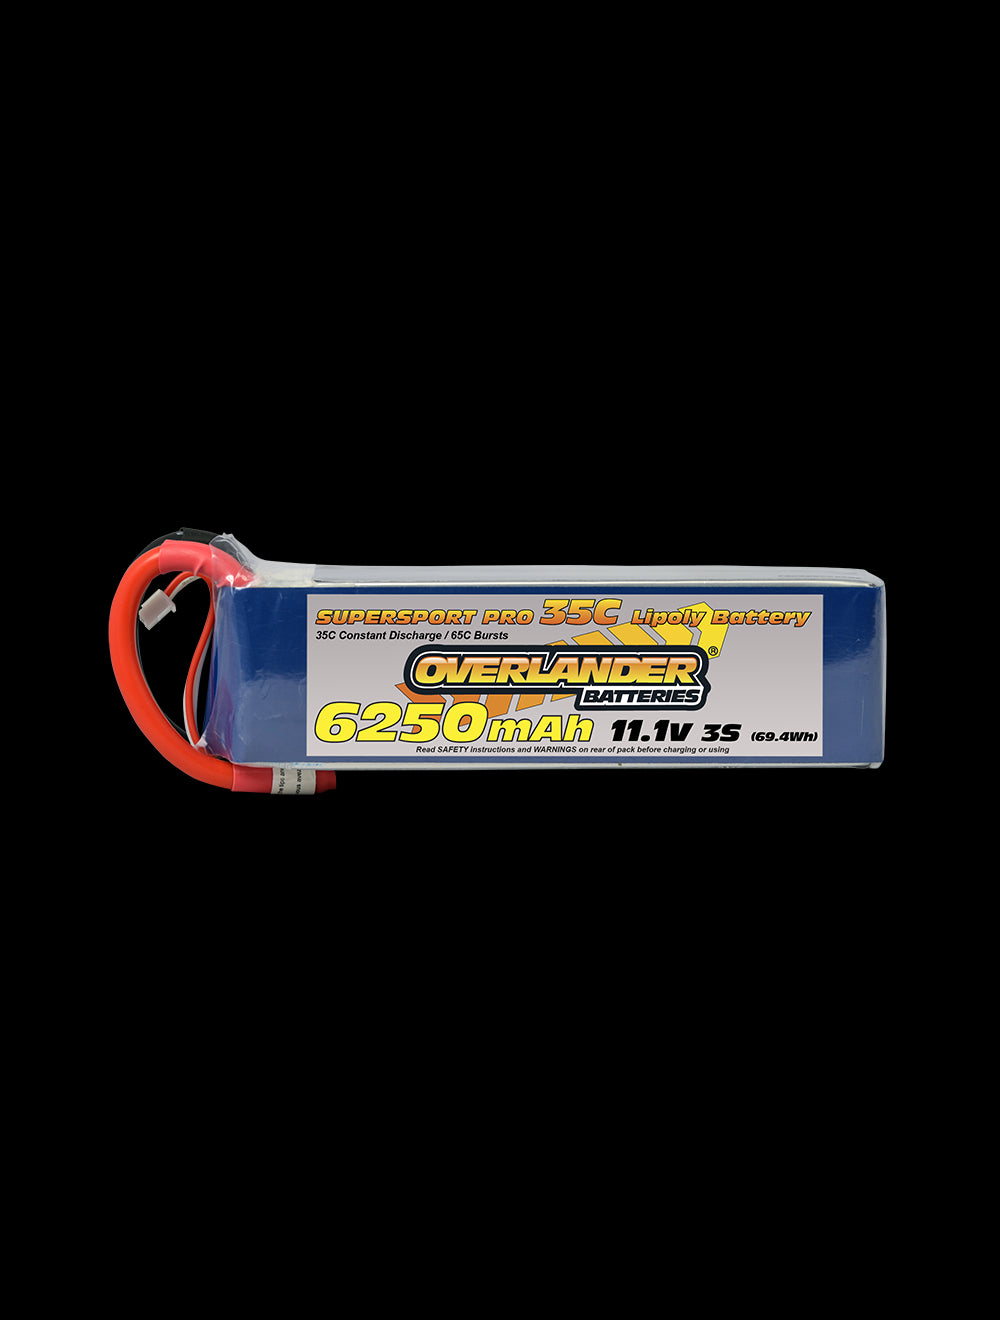 Overlander 6250mAh 11.1V 3S 35C Supersport Pro LiPo Battery - EC5 Connector 2792